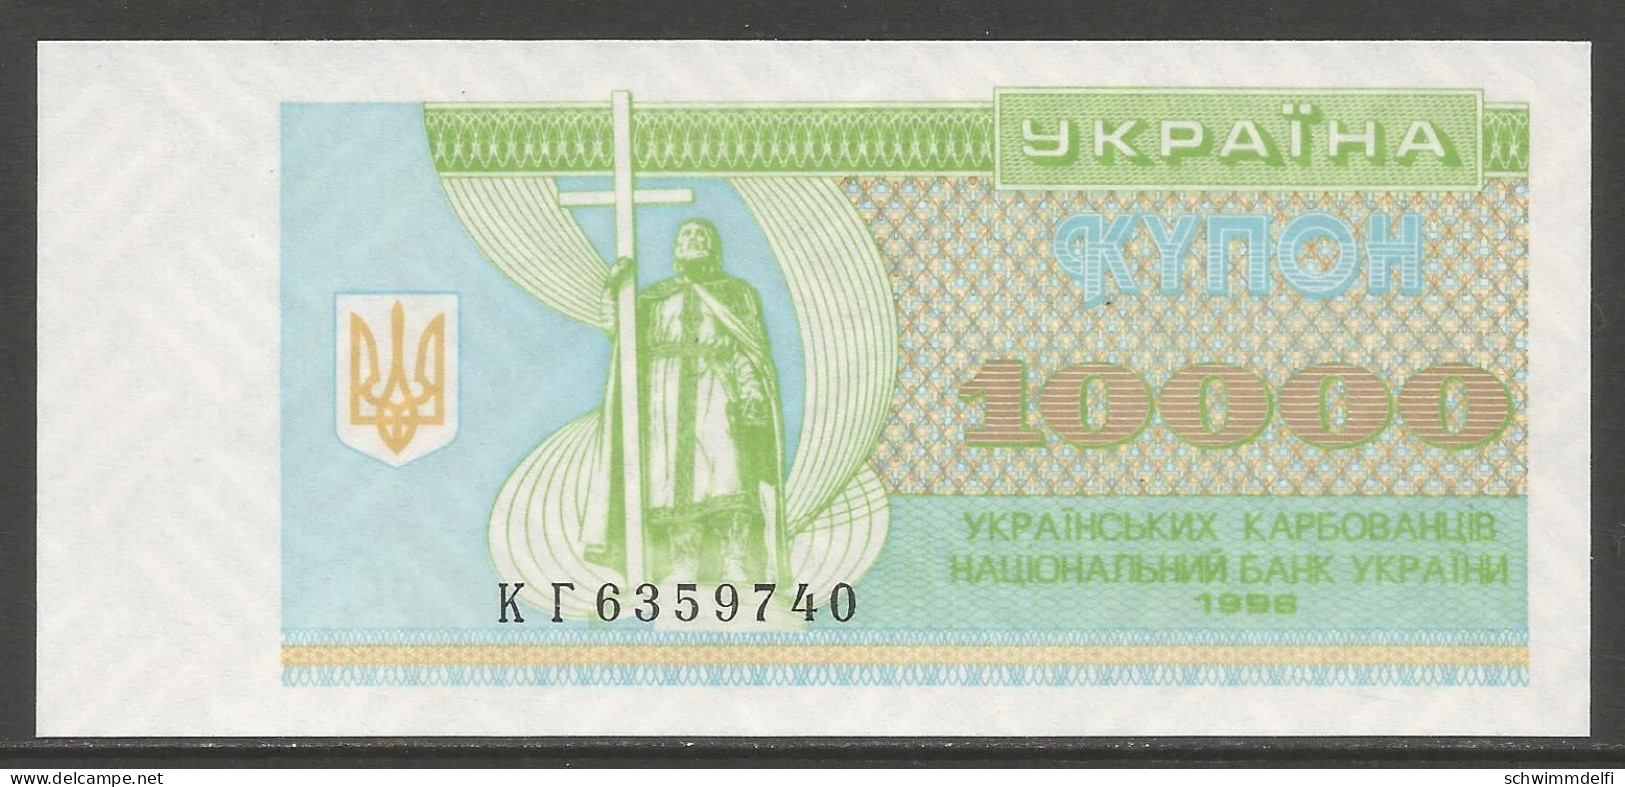 UKRAINE - UCRANIA – 10000 KARBOVANTSIV 1996 - SIN CIRCULAR - UNZIRKULIERT - UNCIRCULATED - Ucrania